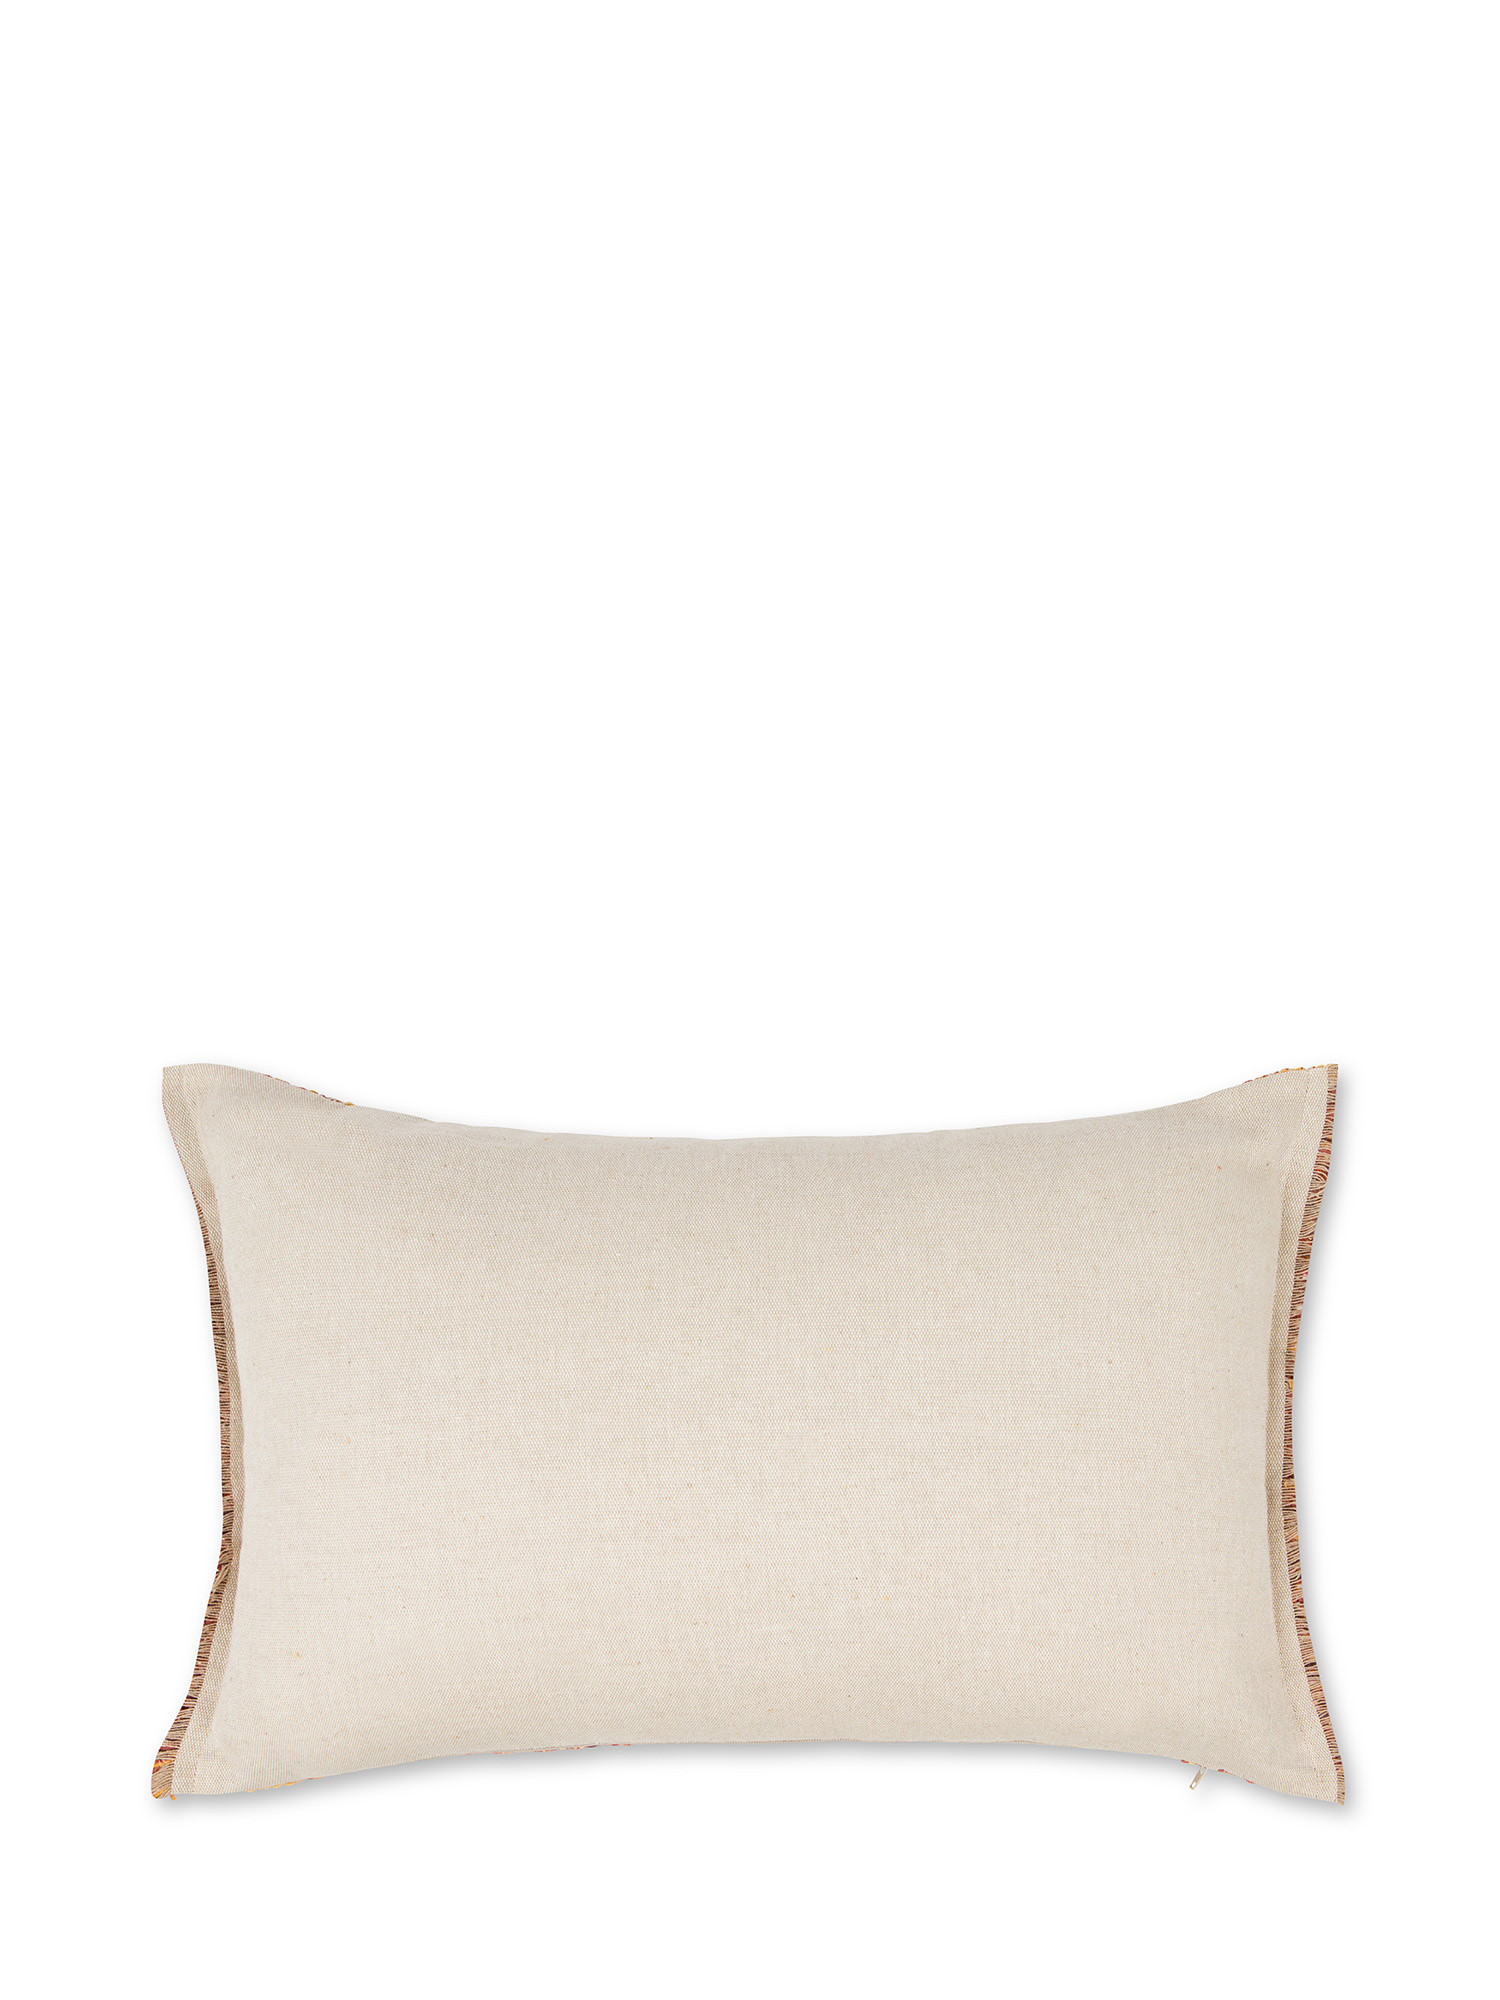 Jacquard knitted cushion with fringes 35X55cm, Orange, large image number 1